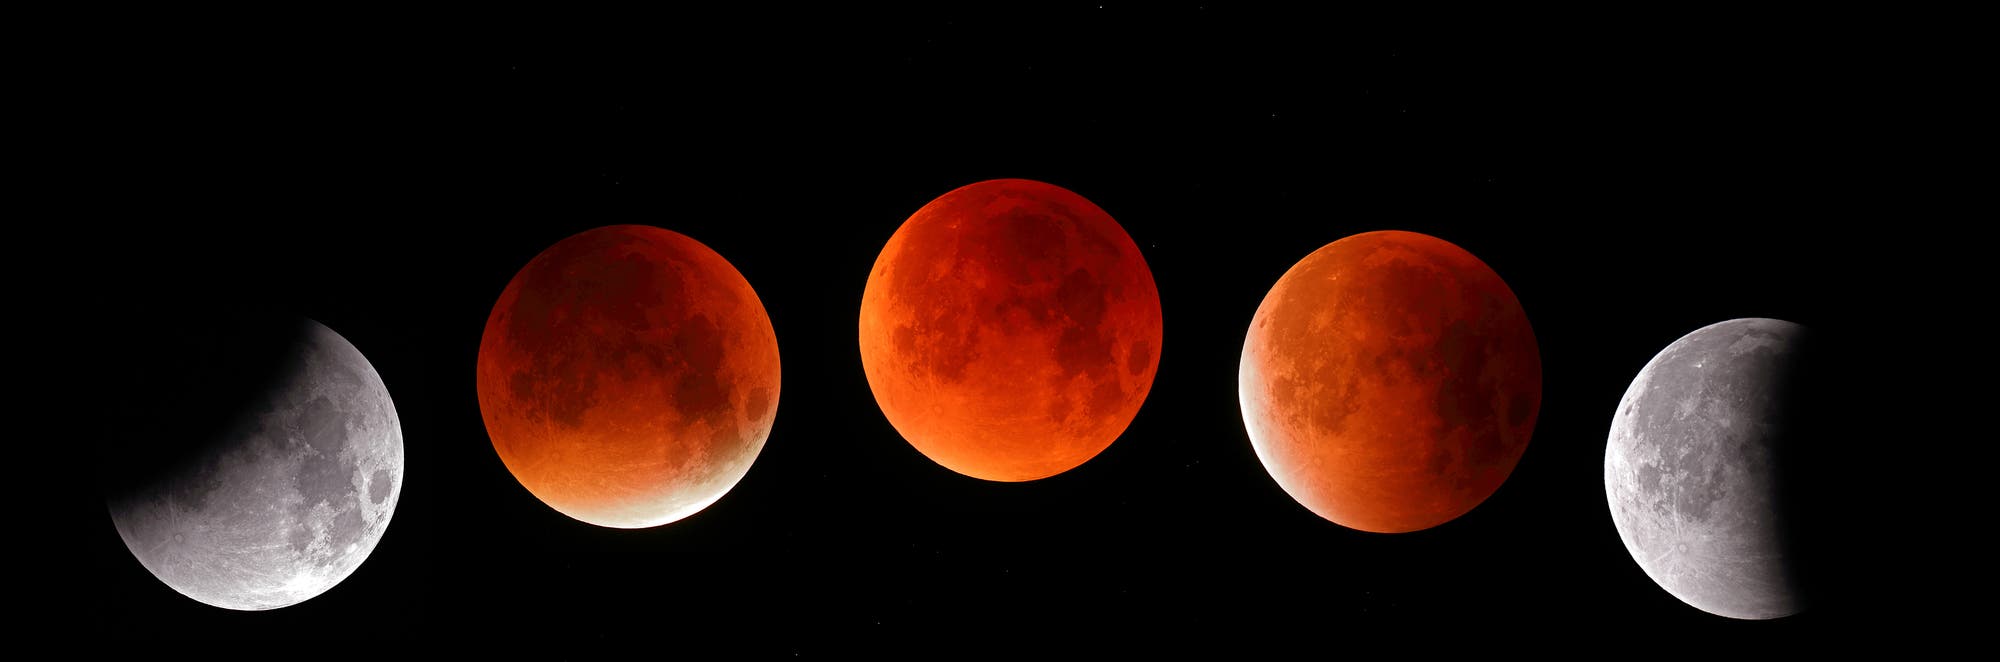 Collage der Mondfinsternis vom 28.09.2015